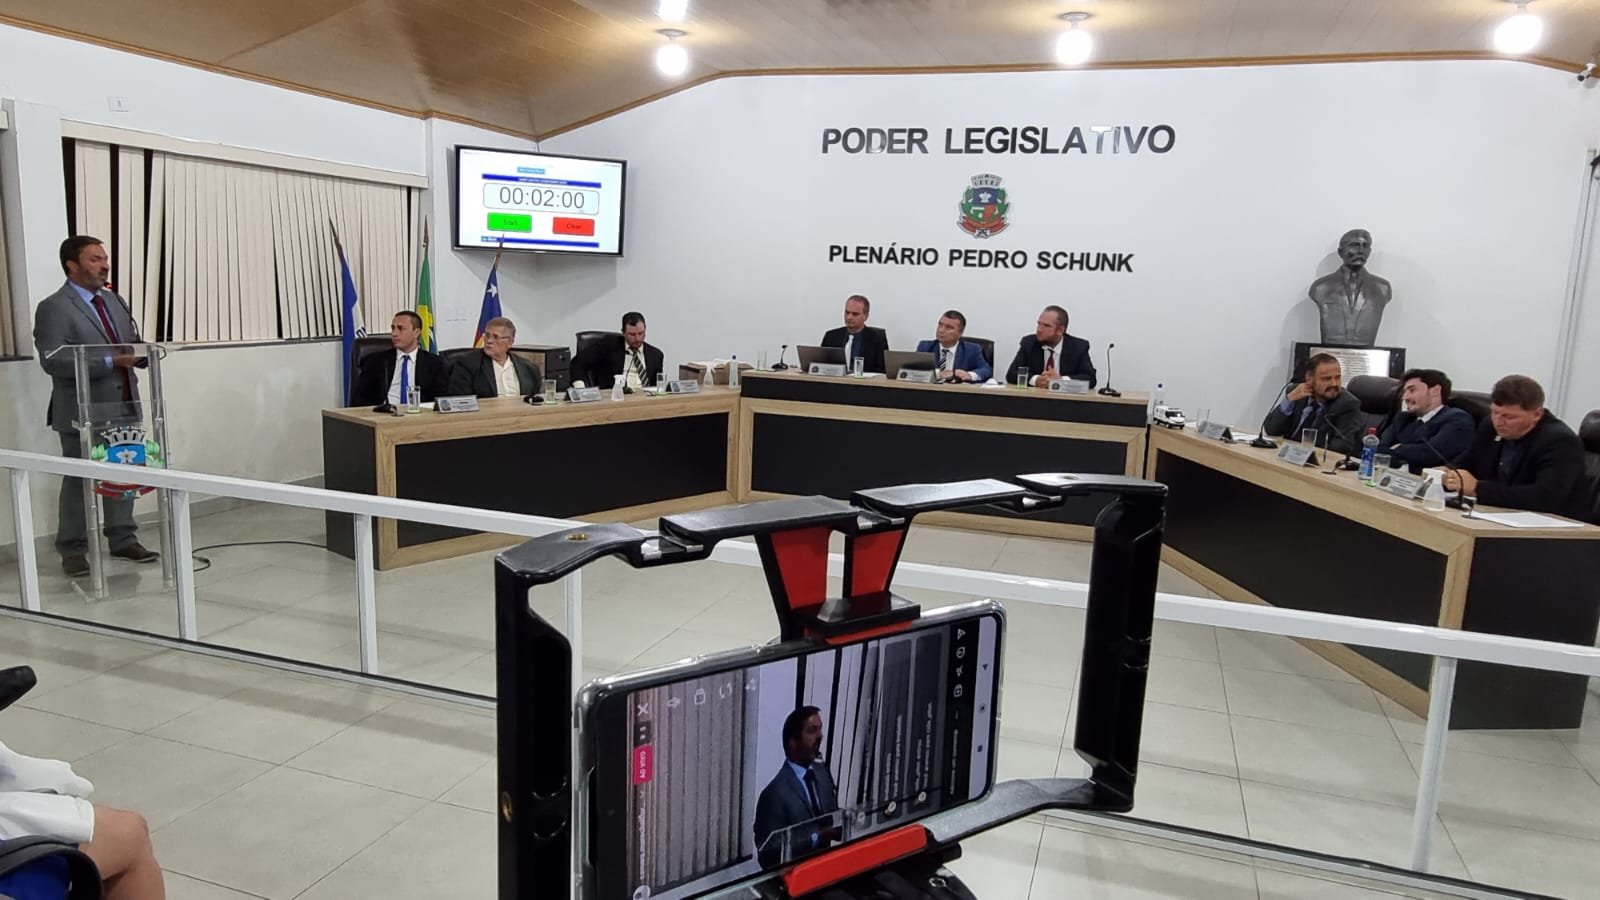 Câmara Municipal de Marechal Floriano lidera Concurso Nacional de Boas Práticas Legislativas e Projetos de Leis, Troféu Destaque Nacional União dos Vereadores do Brasil (UVB).